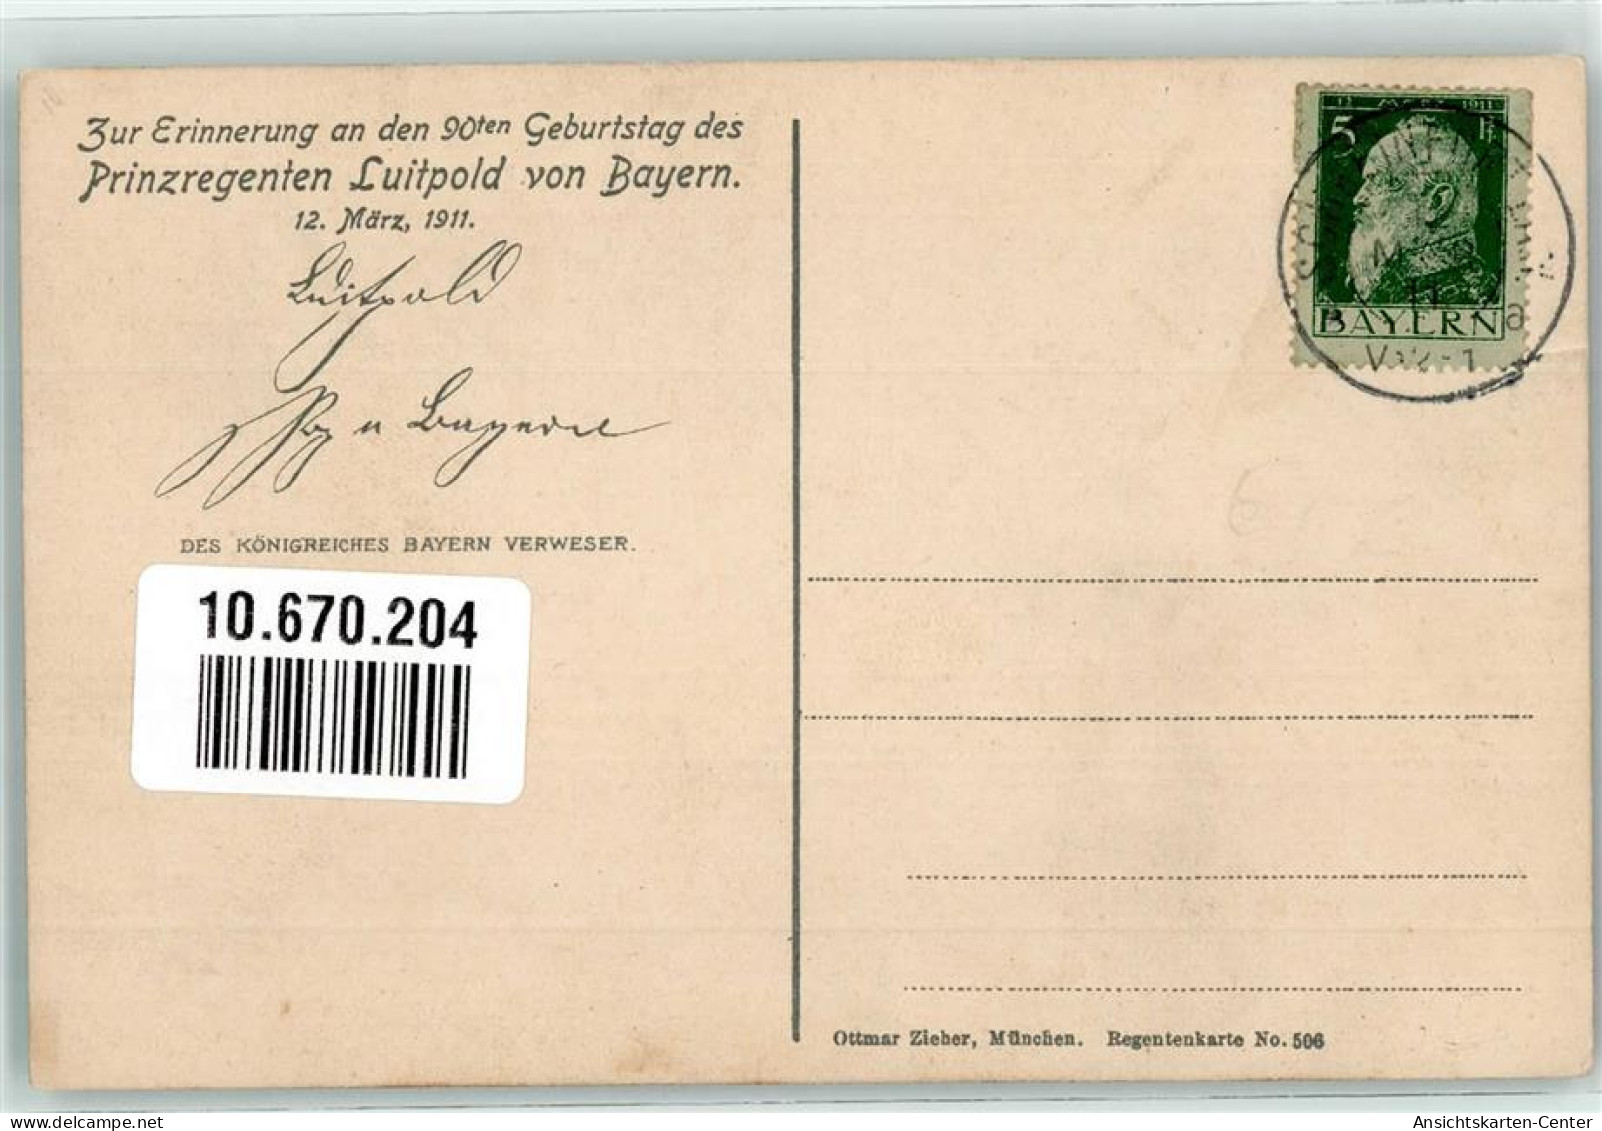 10670204 - Prinzregent Luitpold 90er Geburtstag Zieher, Ottmar Regentenkarte Nr.506 - Familles Royales